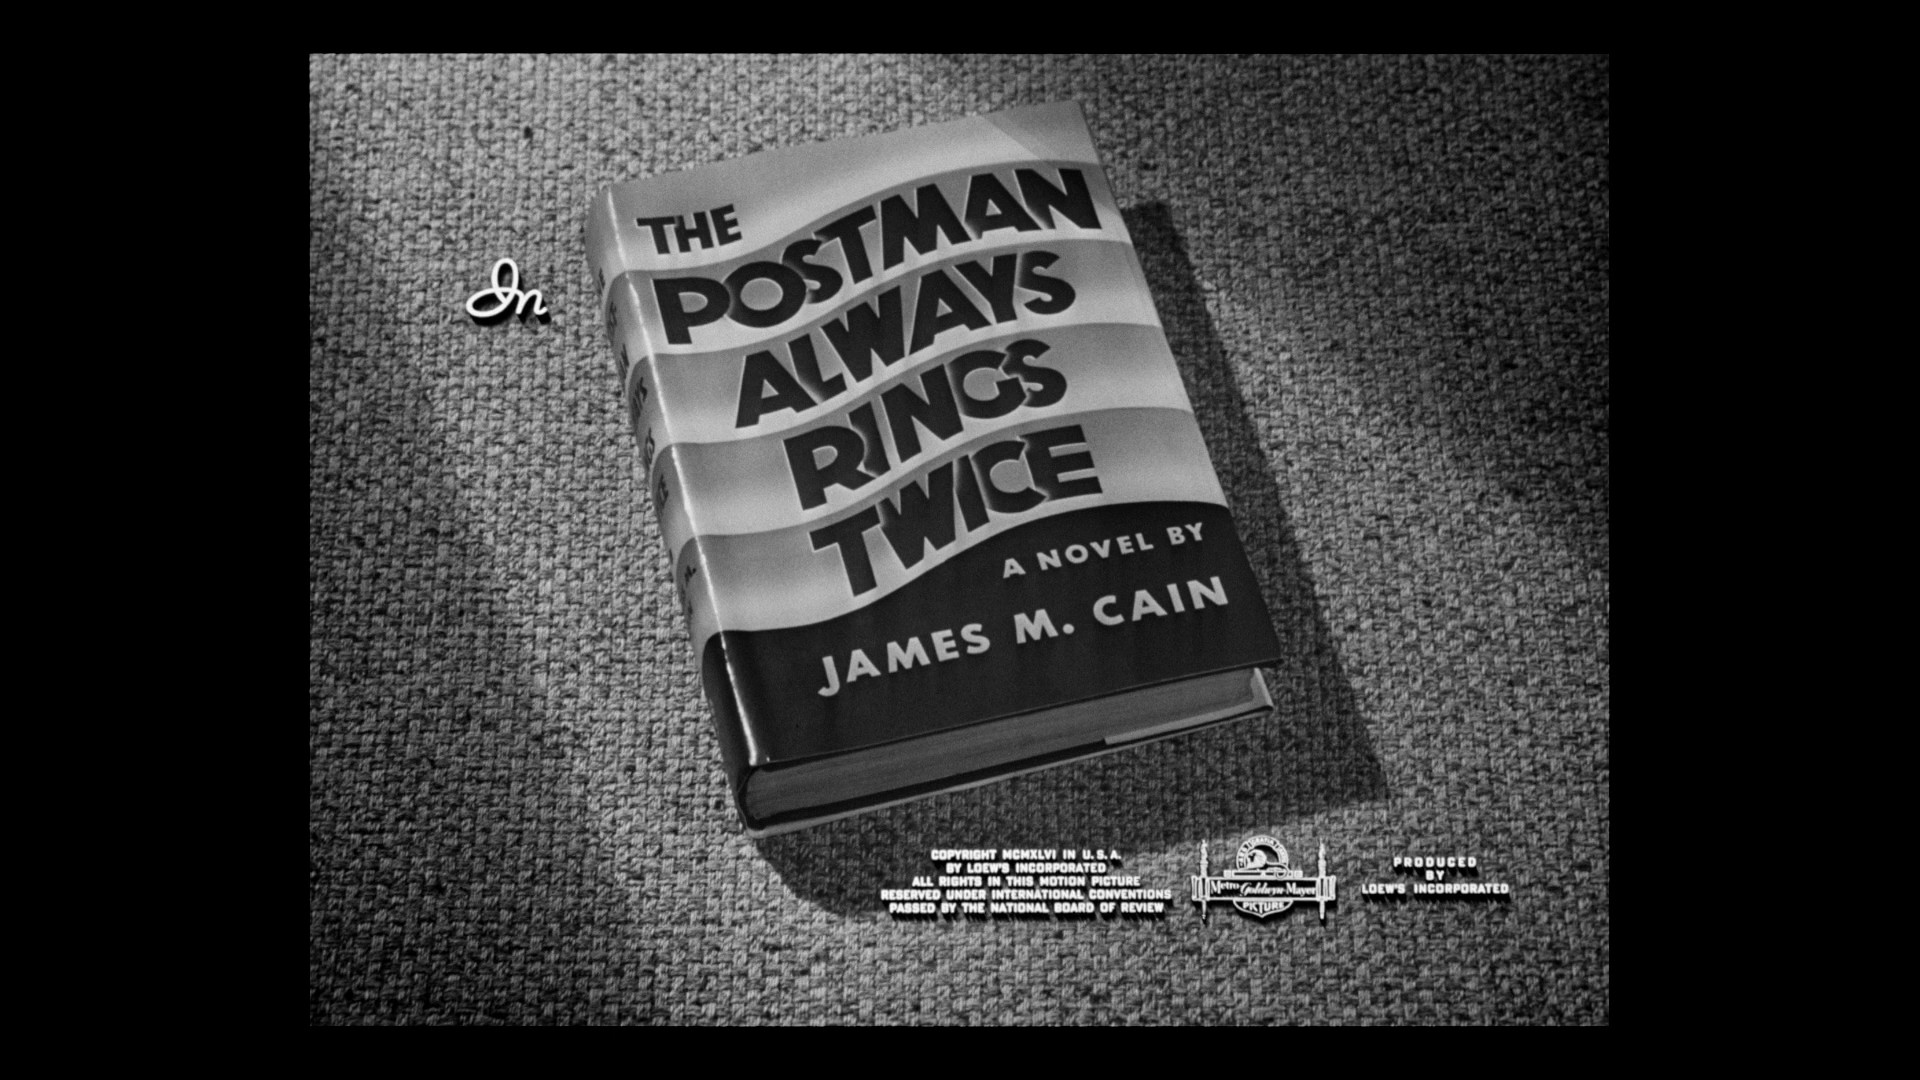 The Postman Always Rings Twice [Blu-ray] [1981] - Best Buy